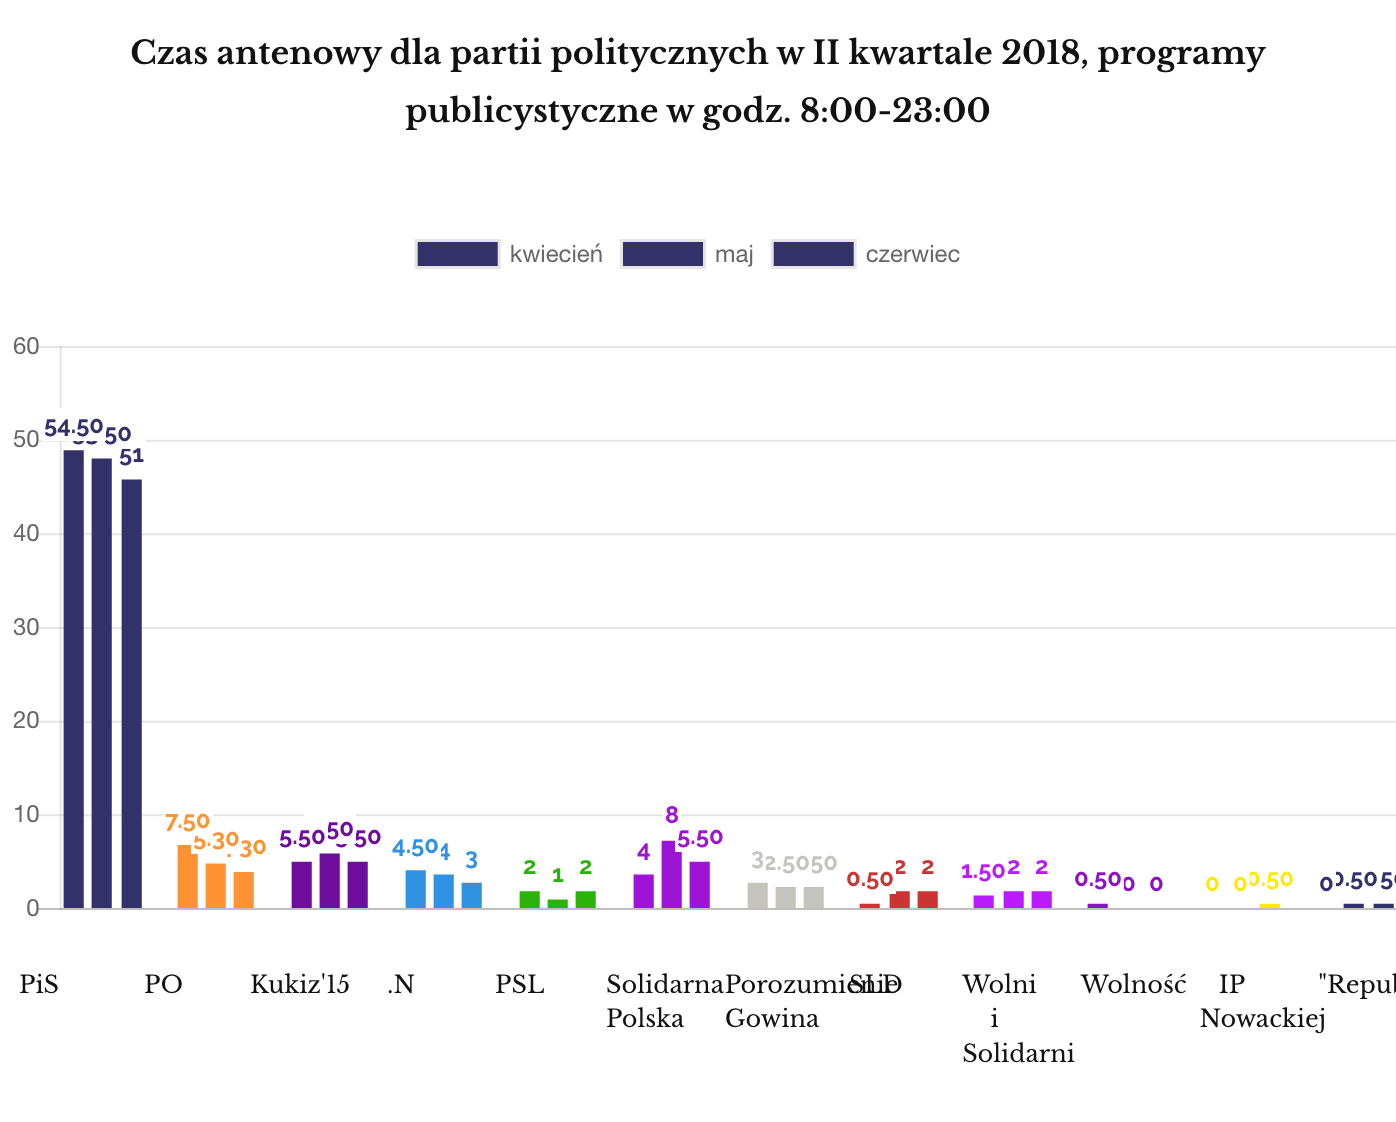 Czas antenowy dla partii politycznych w TVP, II kwartał 2018